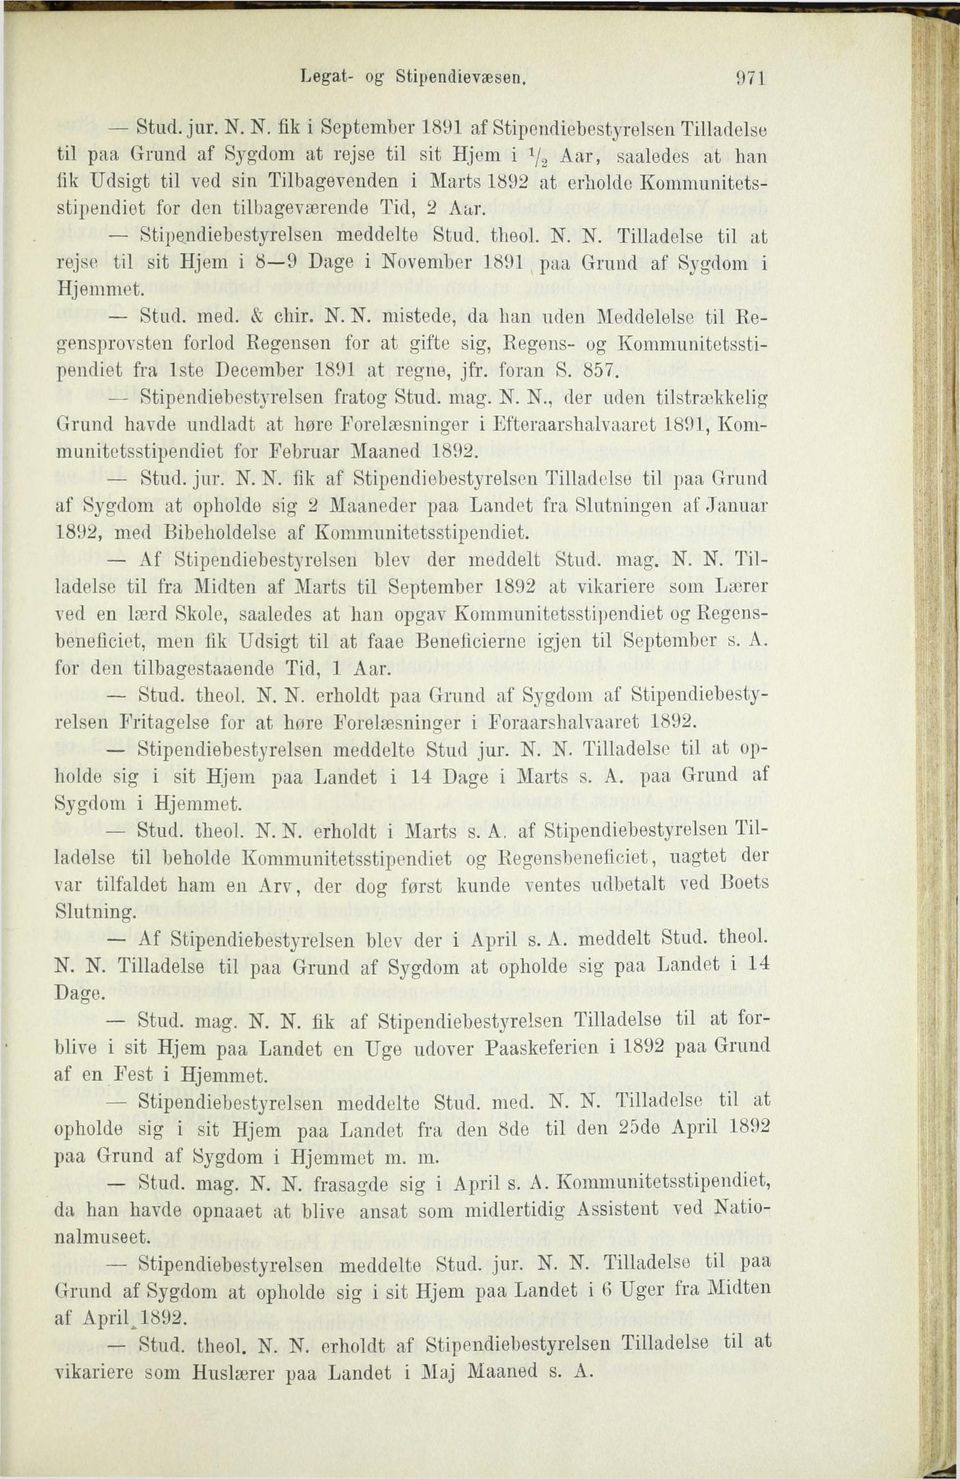 Kommunitetsstipendiet for den tilbageværende Tid, 2 Aar. Stipendiebestyrelsen meddelte Stud. theol. N. N. Tilladelse til at rejse til sit Hjem i 8 9 Dage i November 1891 paa Grund af Sygdom i Hjemmet.